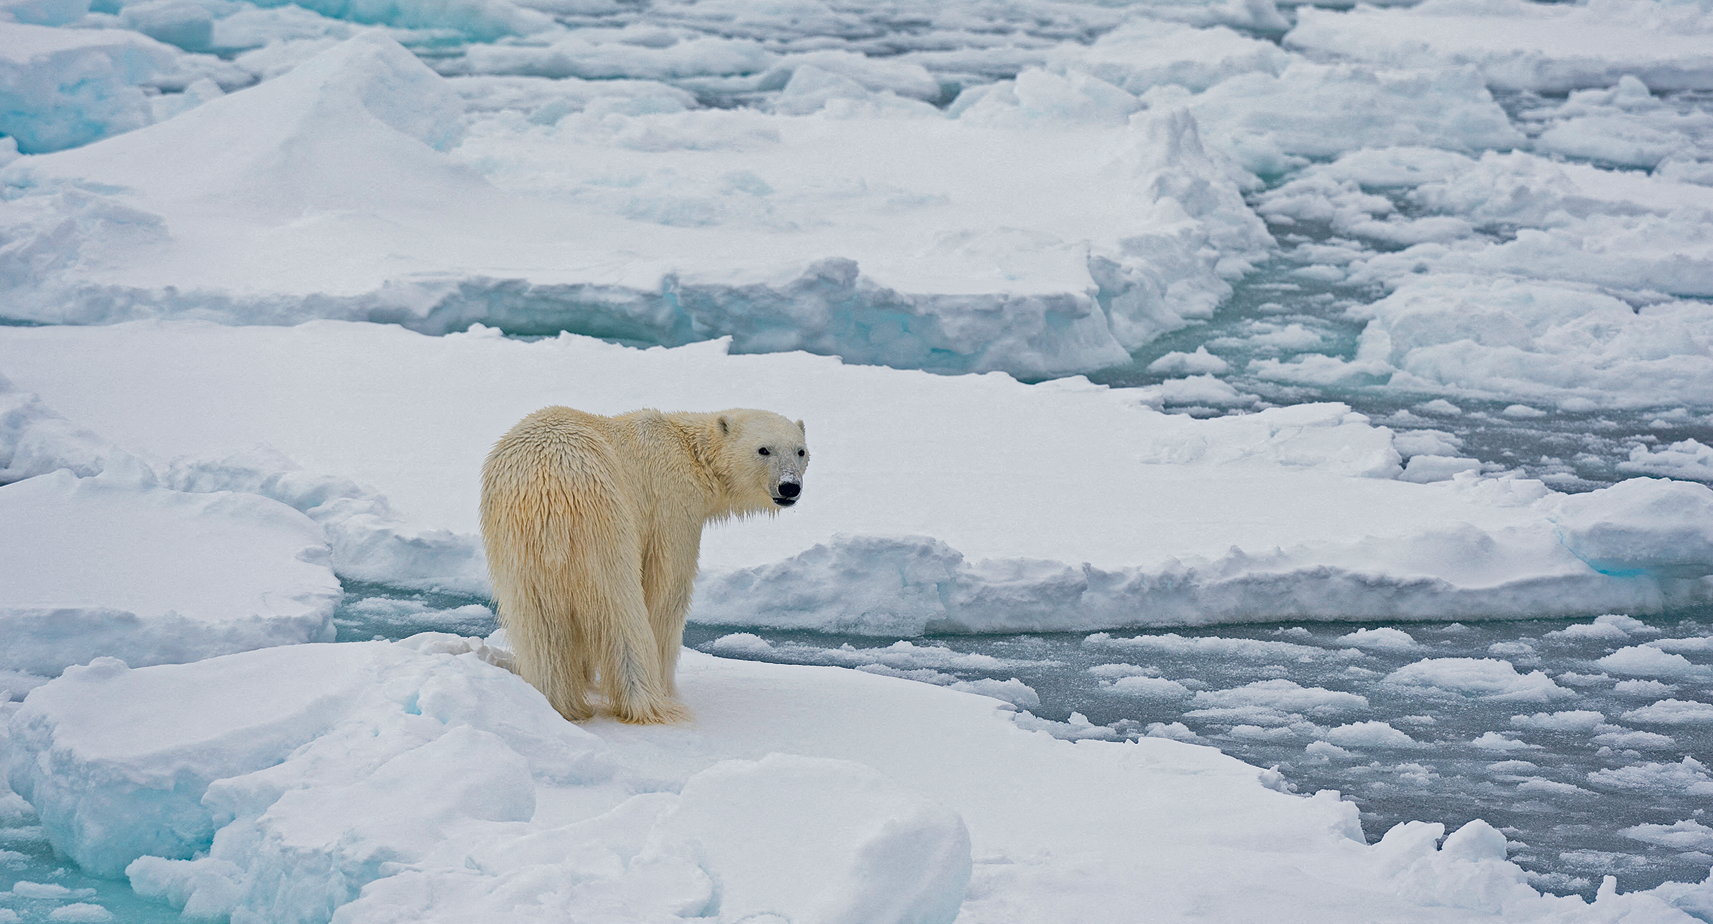 Fotografia. Em primeiro plano está um urso com pelagem branca e molhada, em pé sobre um bloco de gelo e olha para trás. Ao fundo, fragmentos de vários outros blocos de gelo flutuam sobre água.